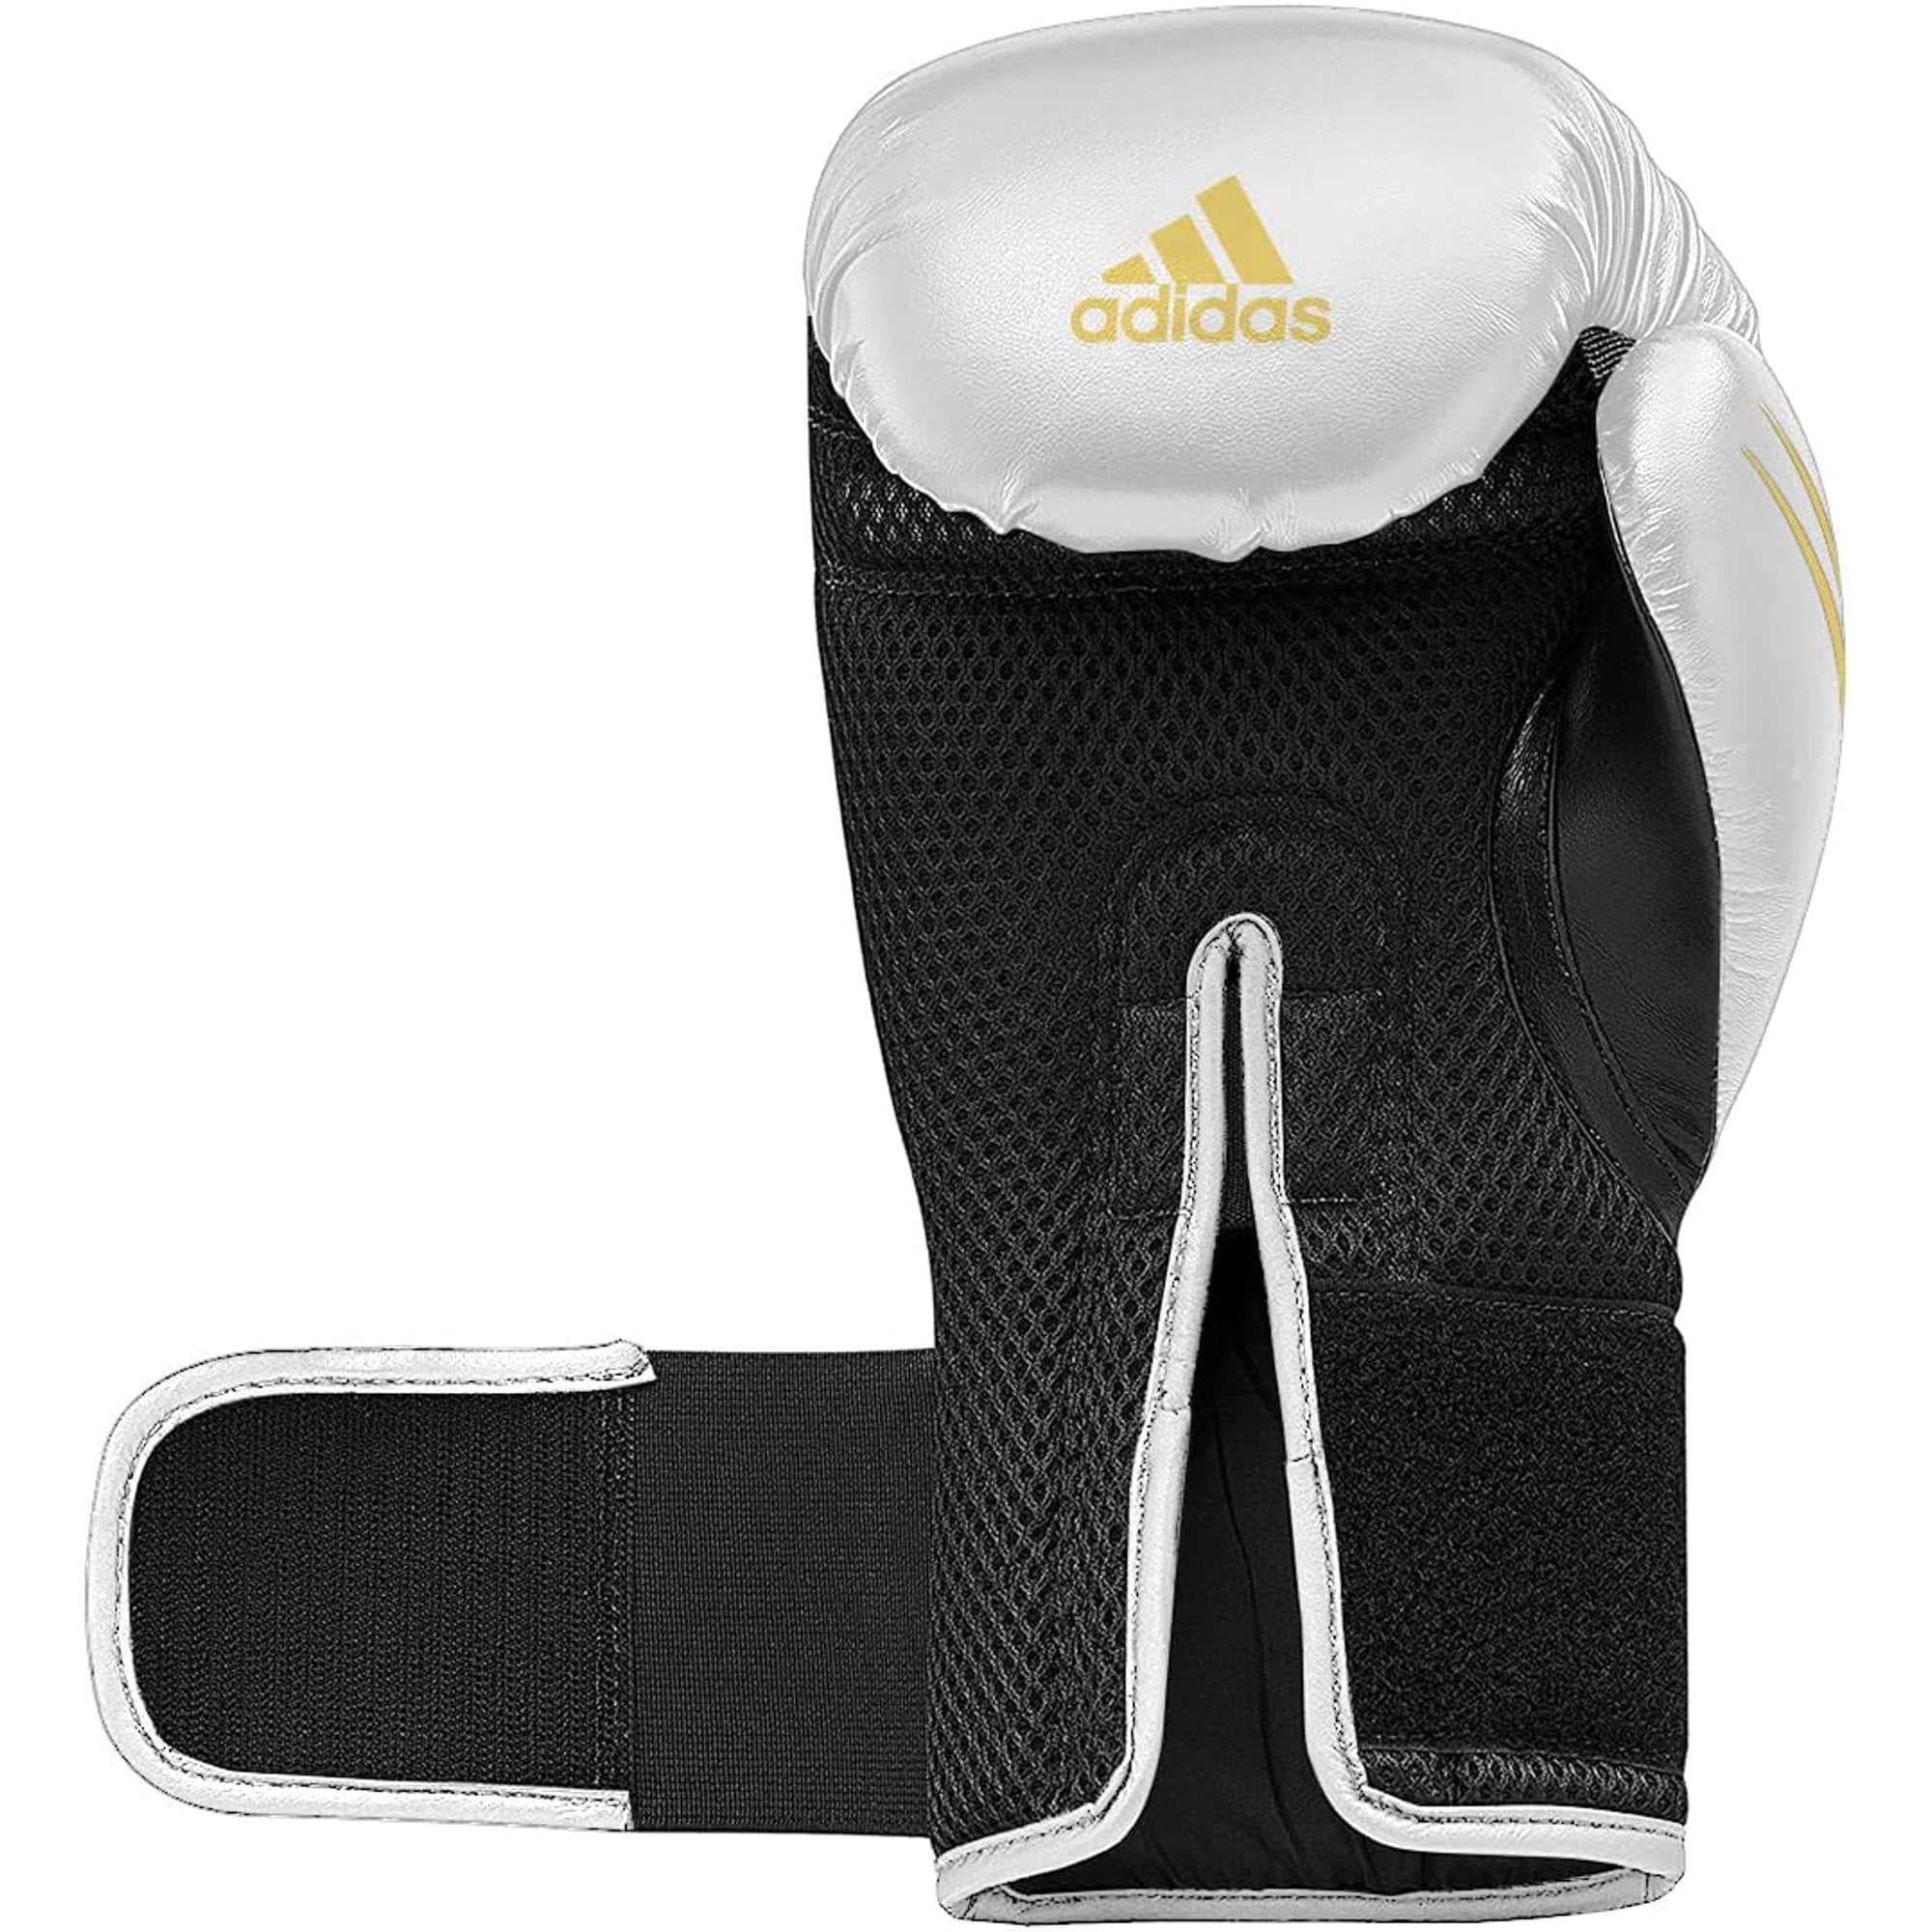 Adidas Speed TILT Gloves - Gloves White/Gold/Black, for Unisex, Men, 10oz Boxing Women, 150 Fighting Training and